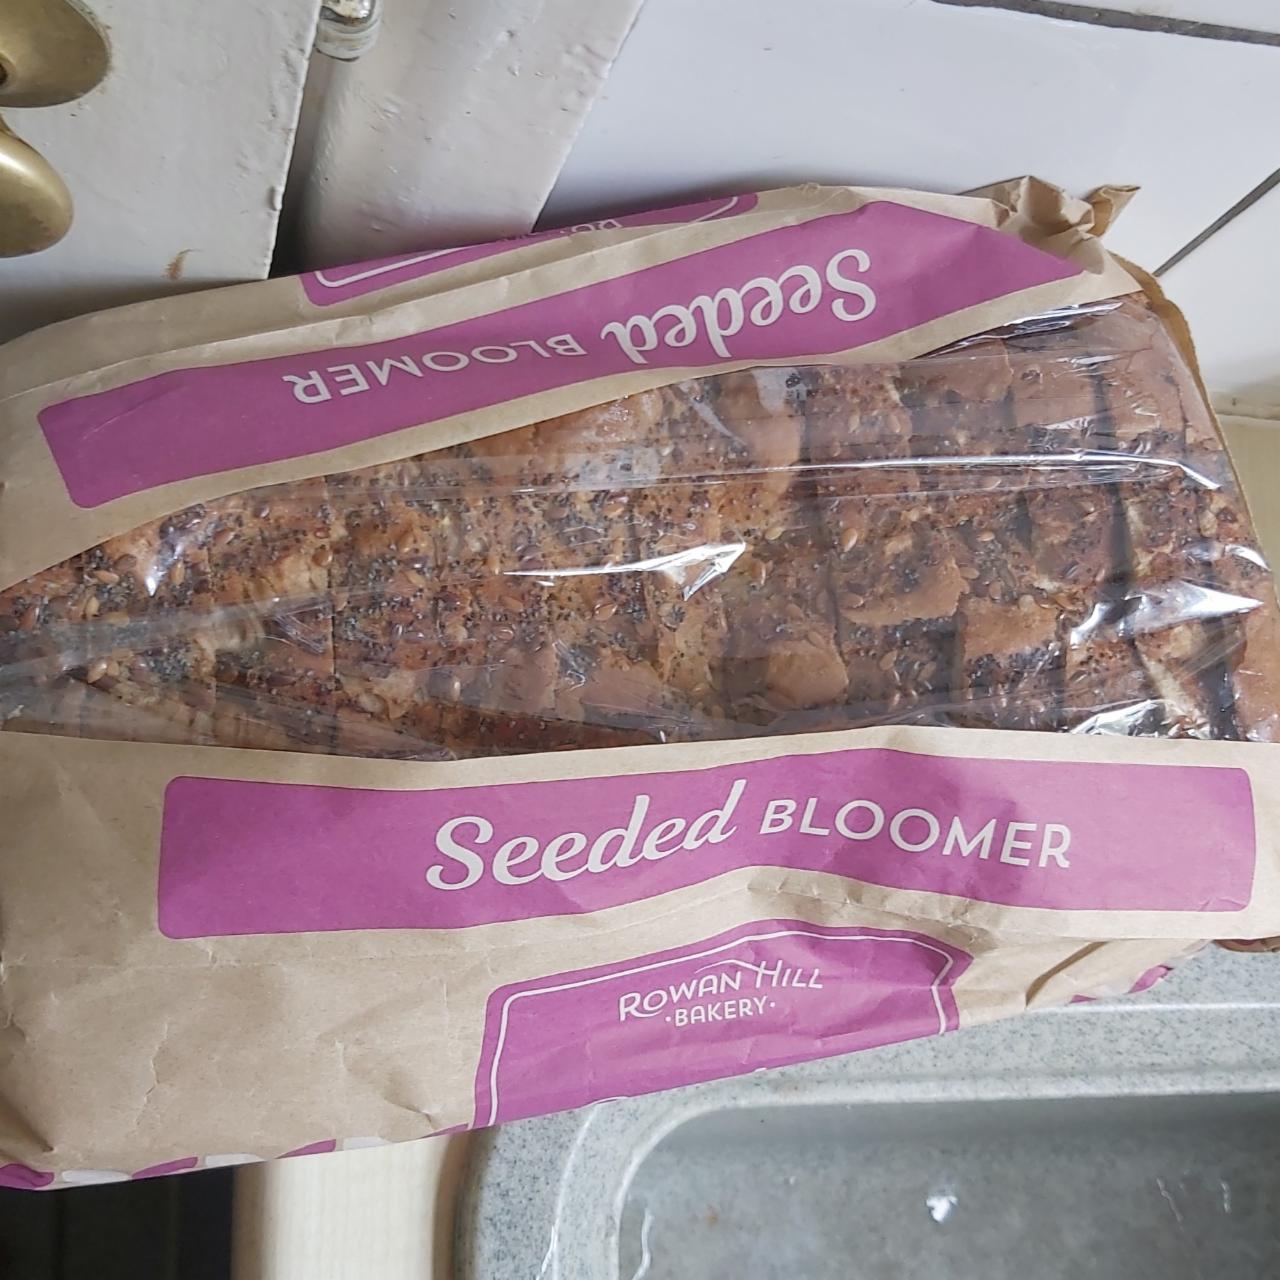 Фото - хлеб от lidl Seeded bloomer